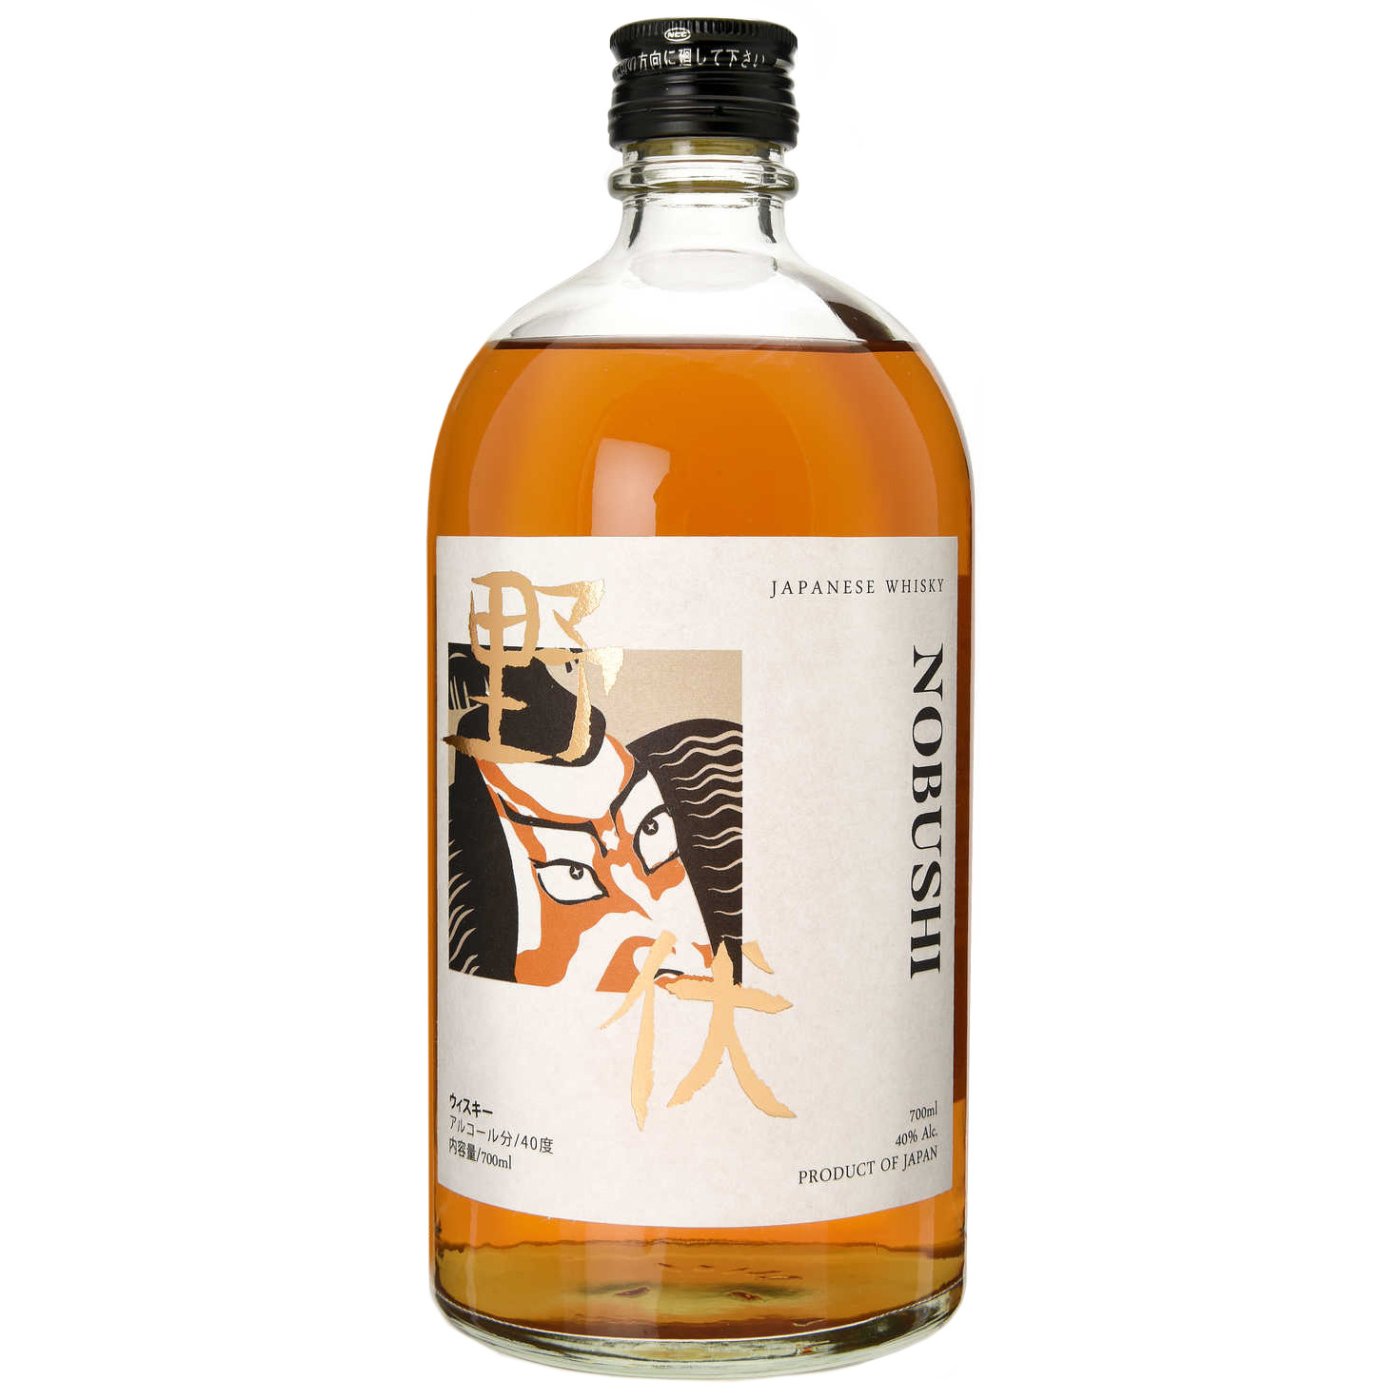 Nobushi - Japanese Whisky 70cl